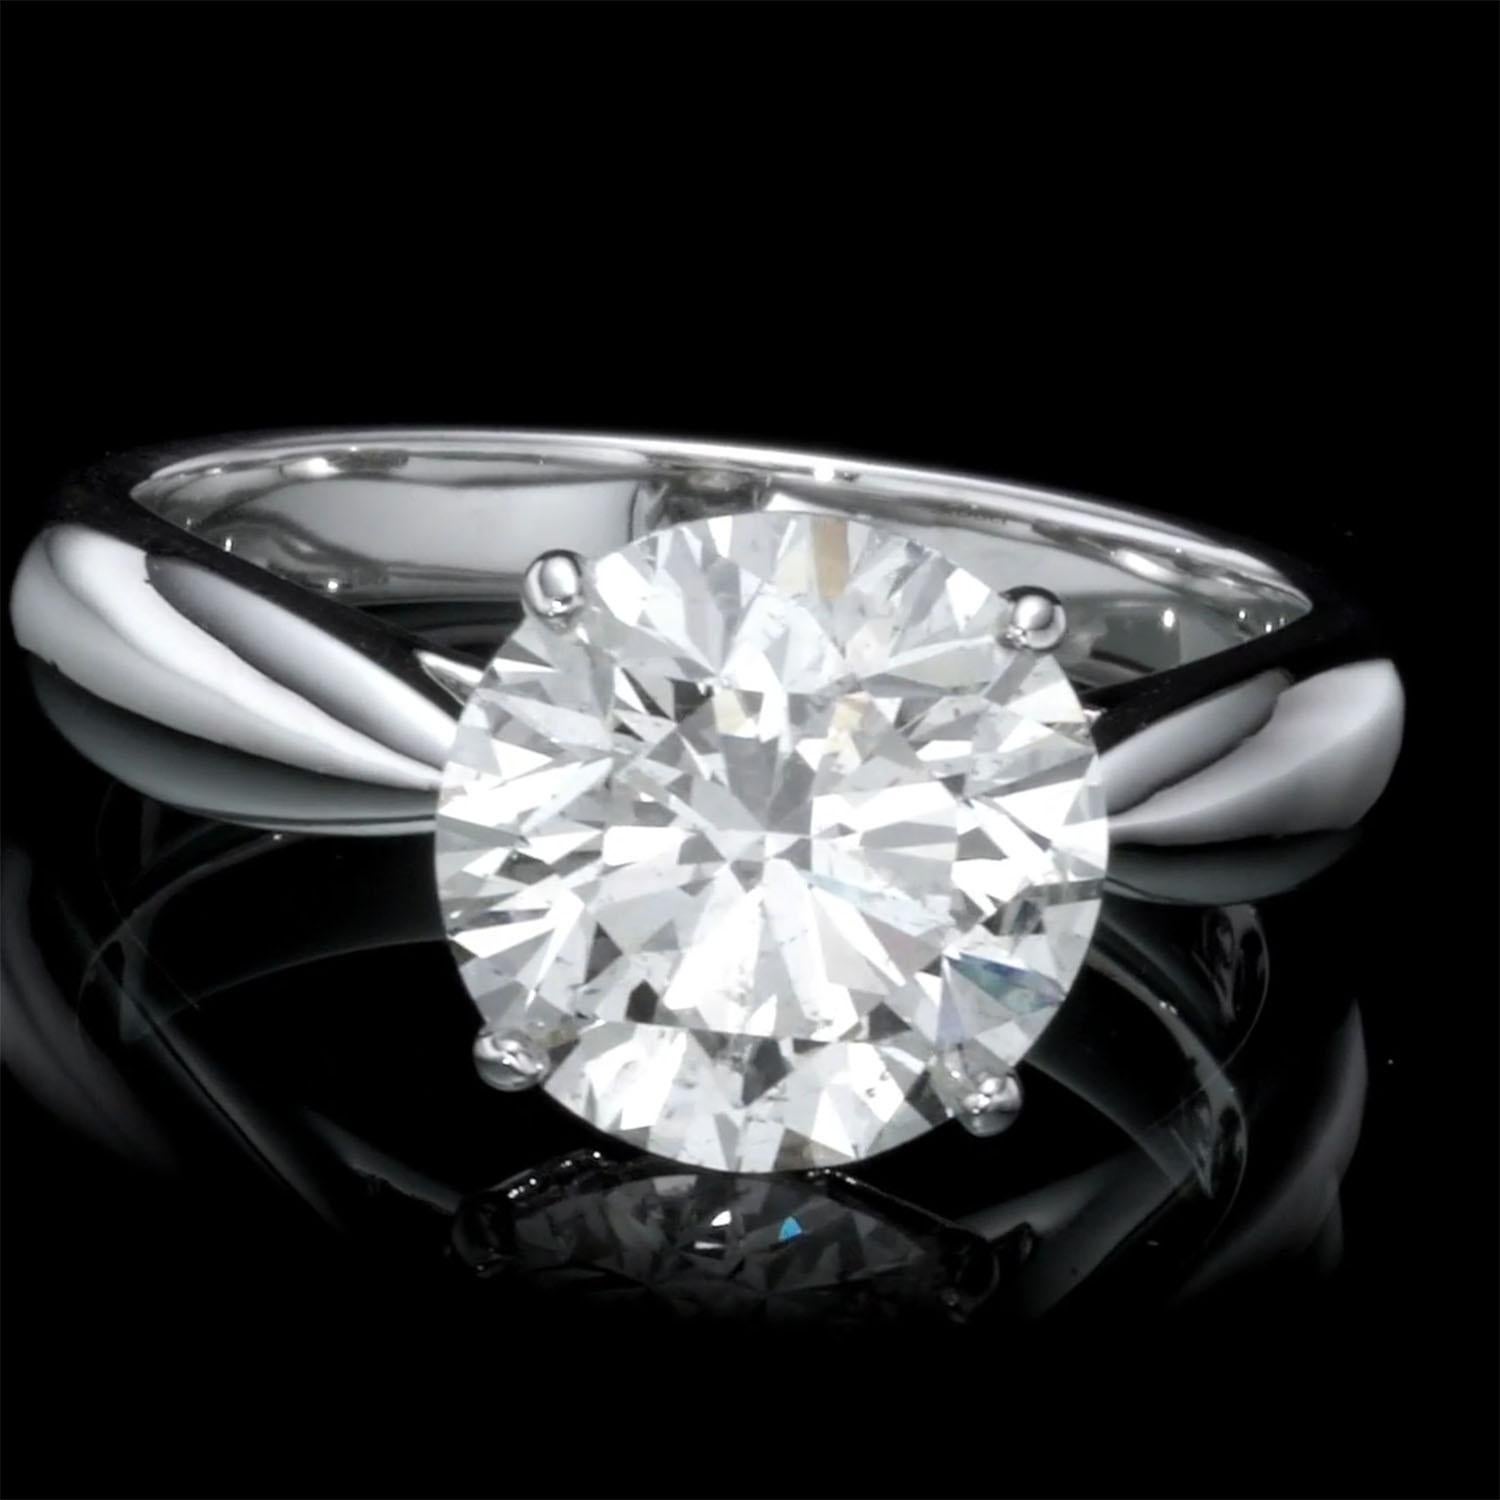 Cette magnifique bague en diamant naturel présente un diamant naturel central de 3,58 carats H SI2. Certificat GIA inclus. Numéro de certificat GIA 2218560584

Cliquez ici pour voir la vidéo du diamant en vrac


Poids du